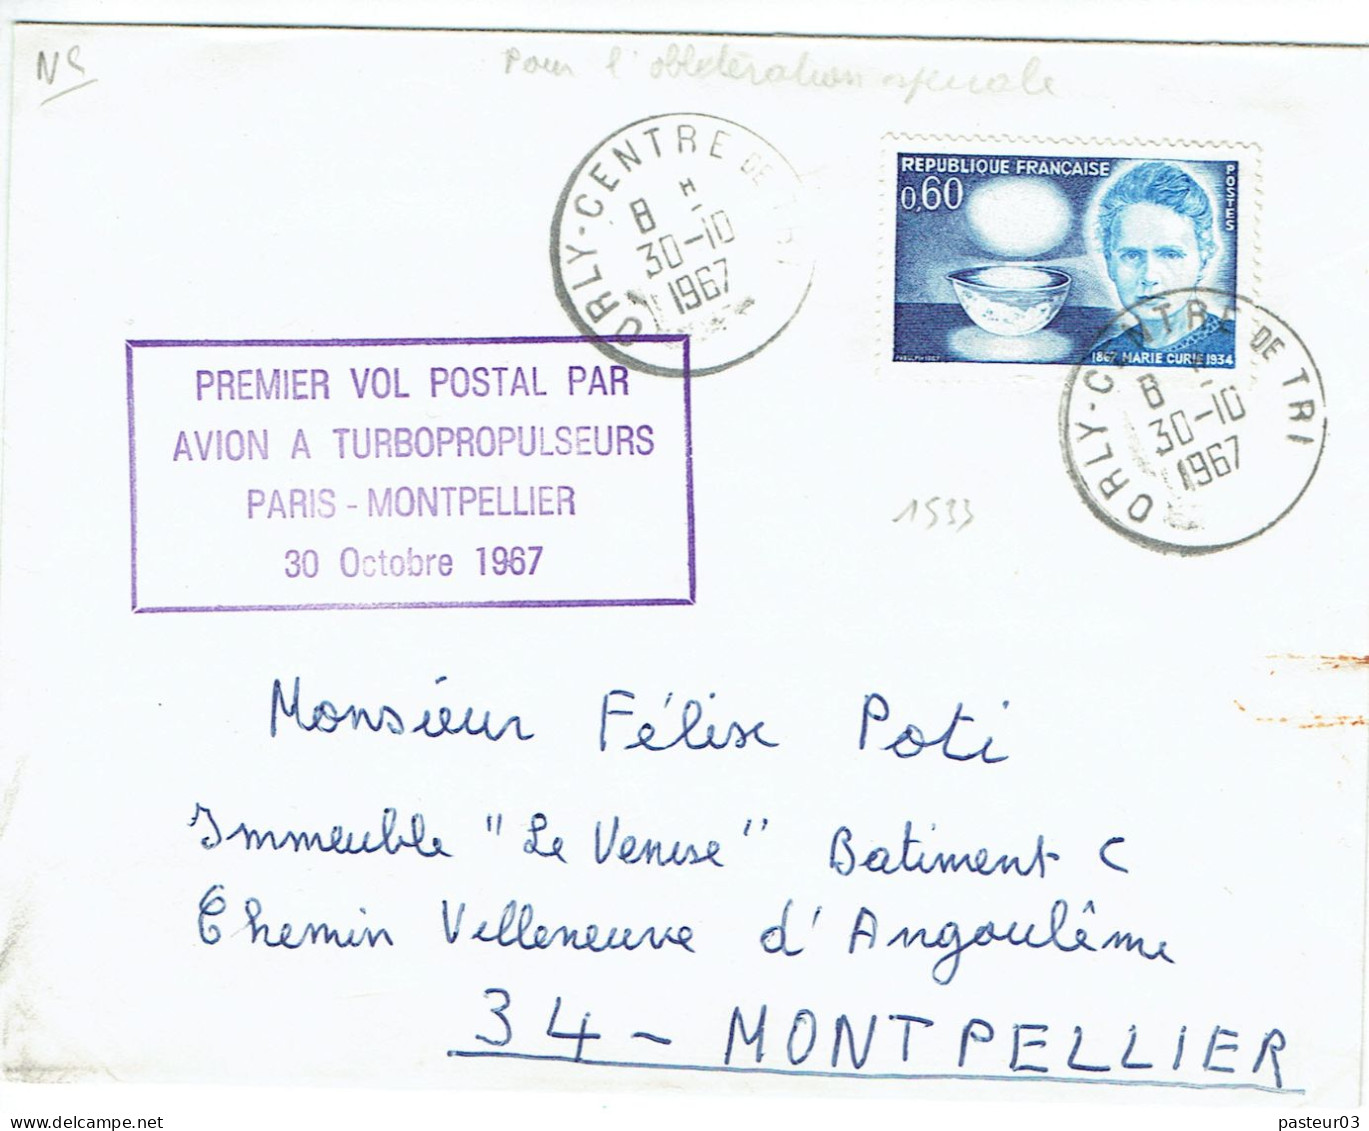 Premier Vol Postal Par Avion à Turbopropulseurs Paris Montpellier 30 Octobre 1967 Timbre N° 1533 De France TaD Orly Cent - 1960-.... Brieven & Documenten